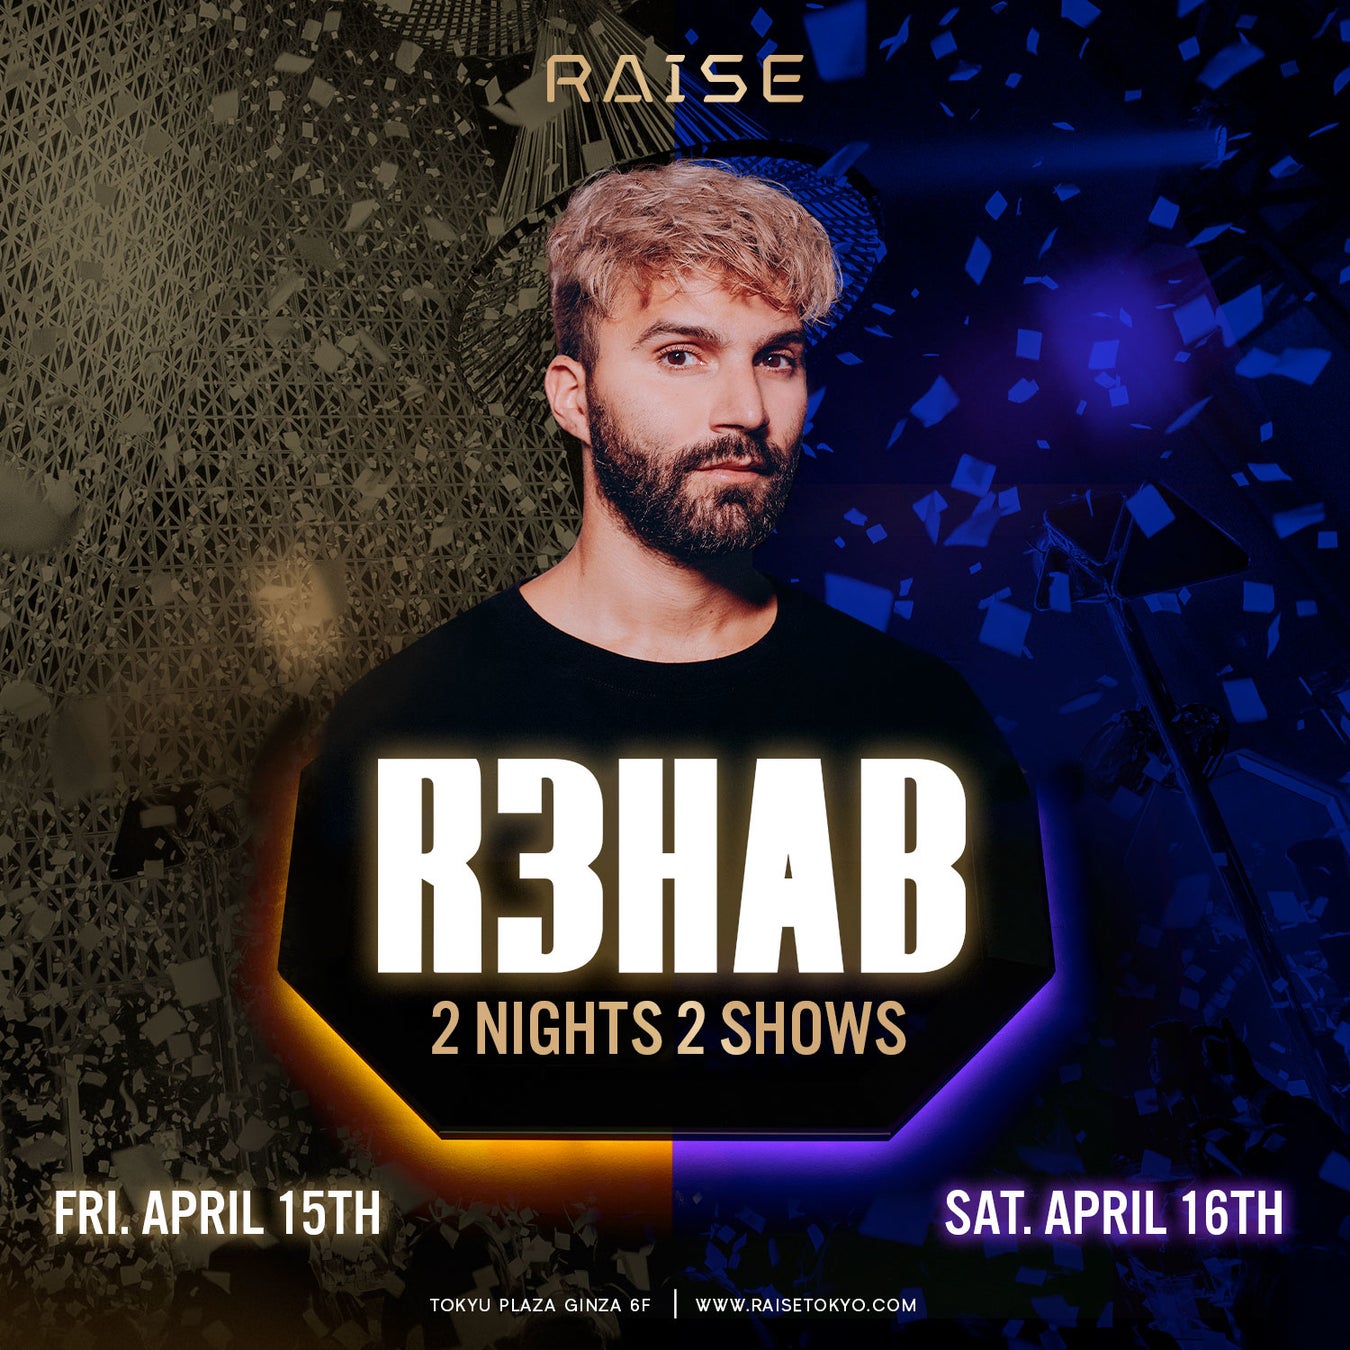 遂に待望の海外アーティスト来日決定！世界的人気を誇るオランダのDJ R3HAB 来日公演、東急プラザ銀座の大型ナイトクラブ「RAISE」にて、4月15日（金）・ 4月16日（土）開催決定。